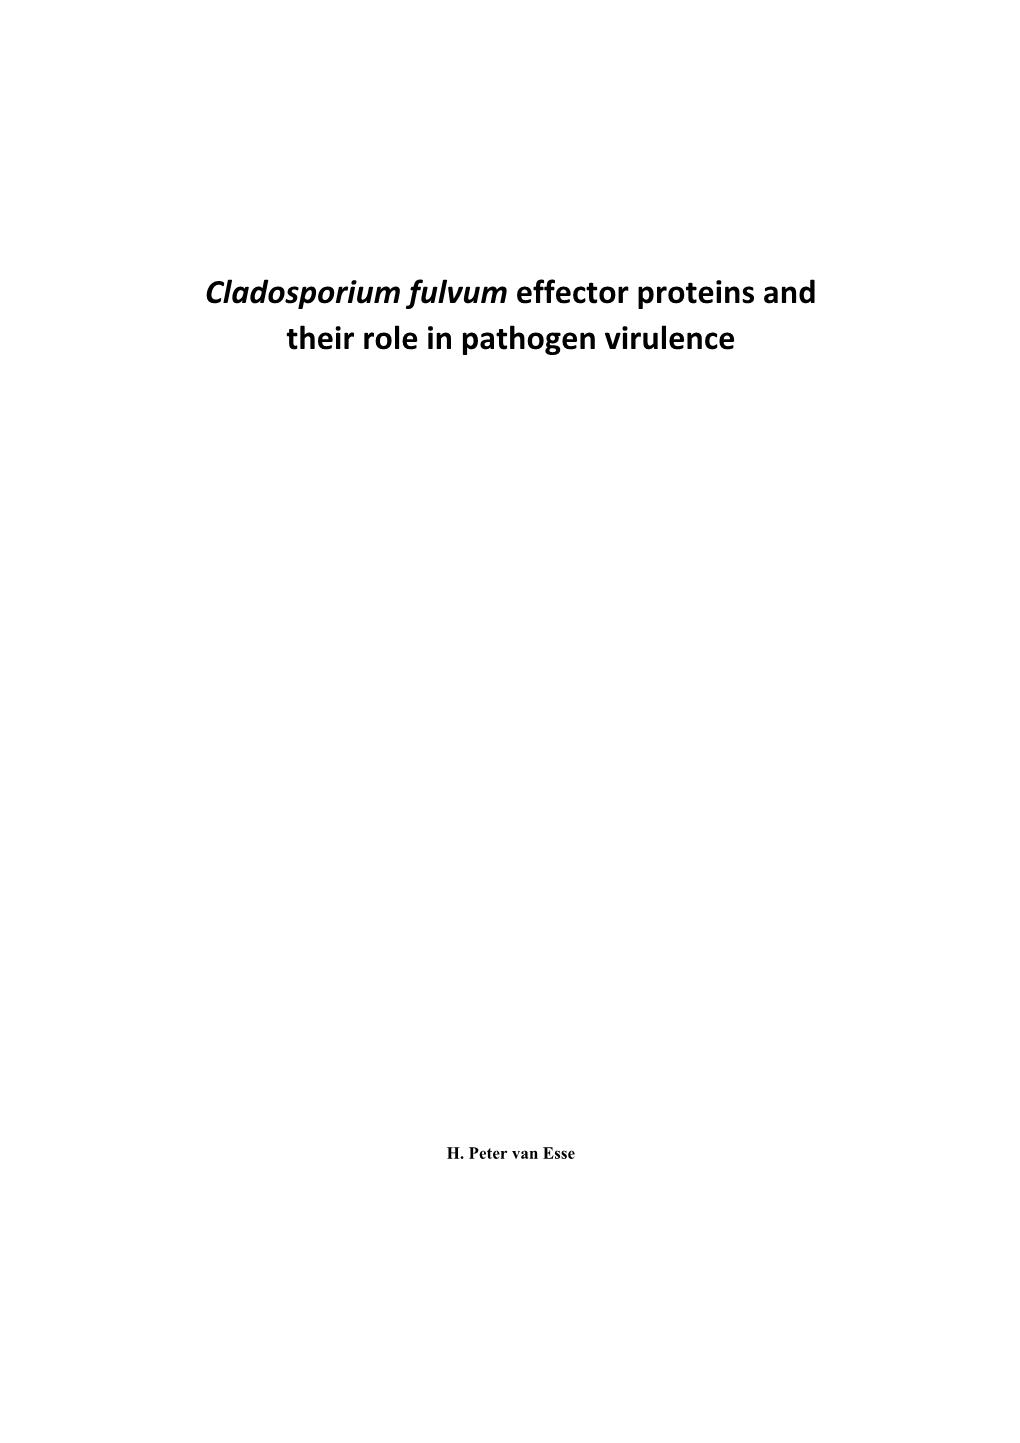 Cladosporium Fulvum Effector Proteins and Their Role in Pathogen Virulence